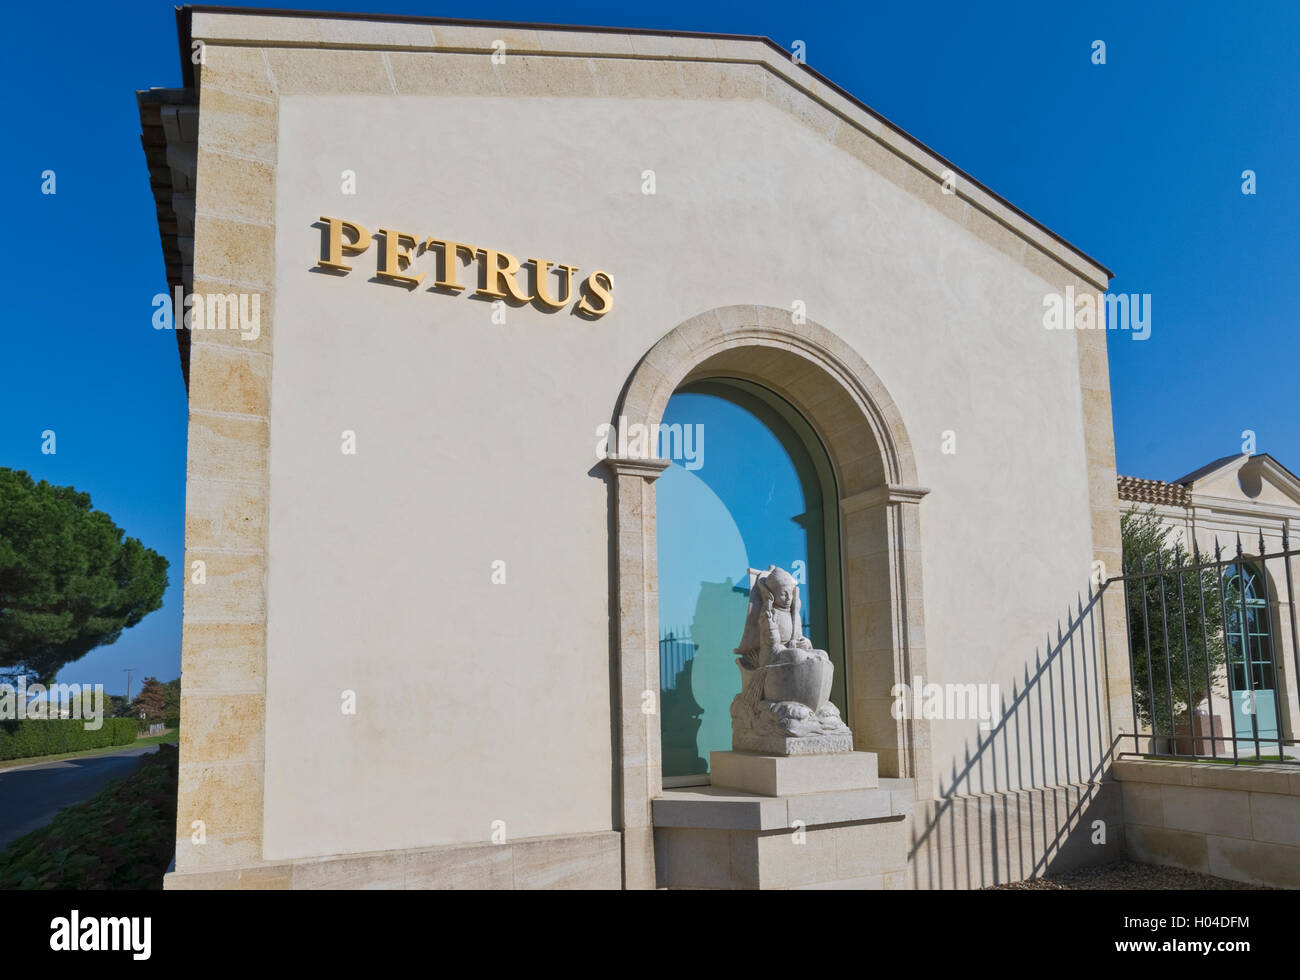 Chateau Petrus Weingut Keller cave mit Emblem "Peter der Apostel Statue" Pomerol Bordeaux Gironde Frankreich Stockfoto